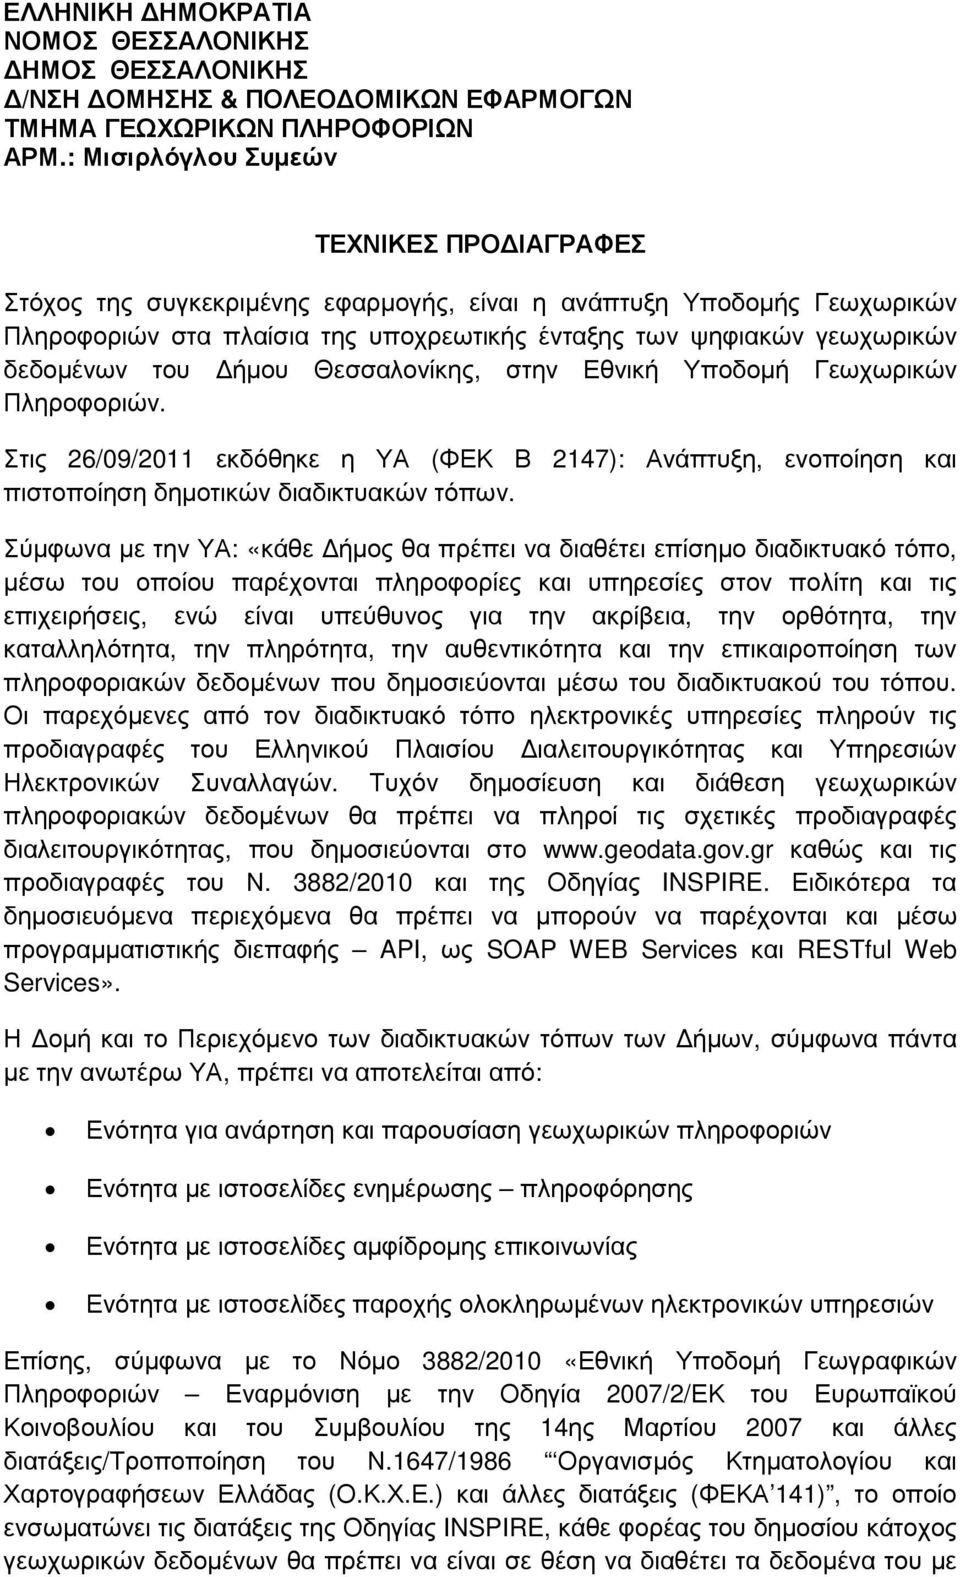 του ήµου Θεσσαλονίκης, στην Εθνική Υποδοµή Γεωχωρικών Πληροφοριών. Στις 26/09/2011 εκδόθηκε η ΥΑ (ΦΕΚ Β 2147): Ανάπτυξη, ενοποίηση και πιστοποίηση δηµοτικών διαδικτυακών τόπων.